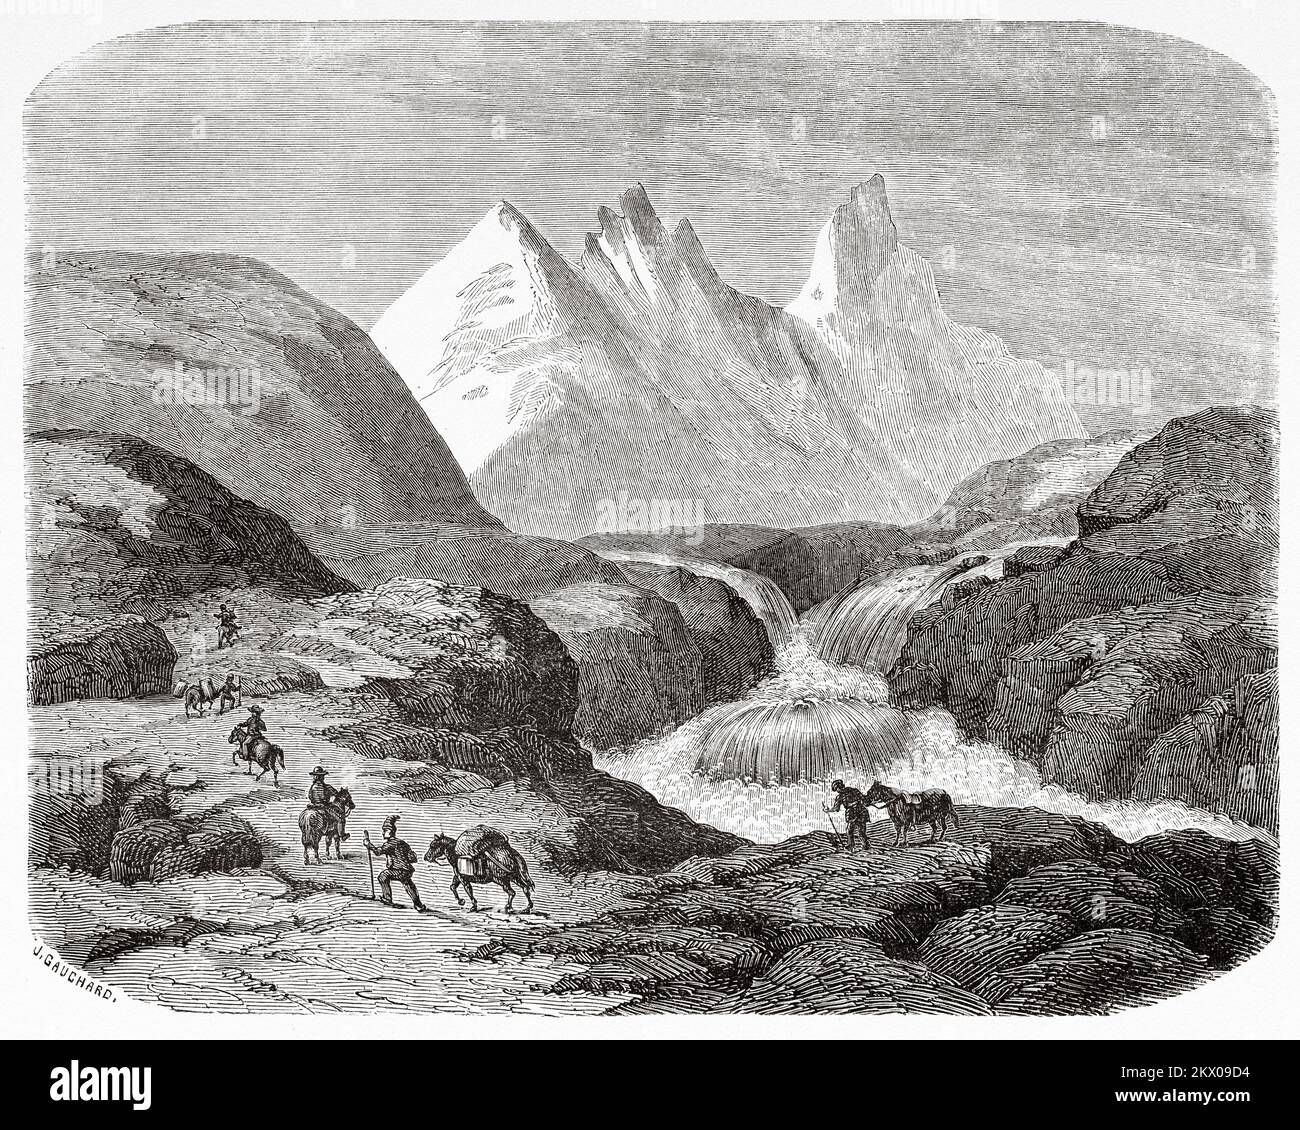 Montañas Horuntinderna, Noruega. Escandinavia, Norte de Europa. Viajes en los Estados escandinavos por Saint-Blaise 1856 Foto de stock